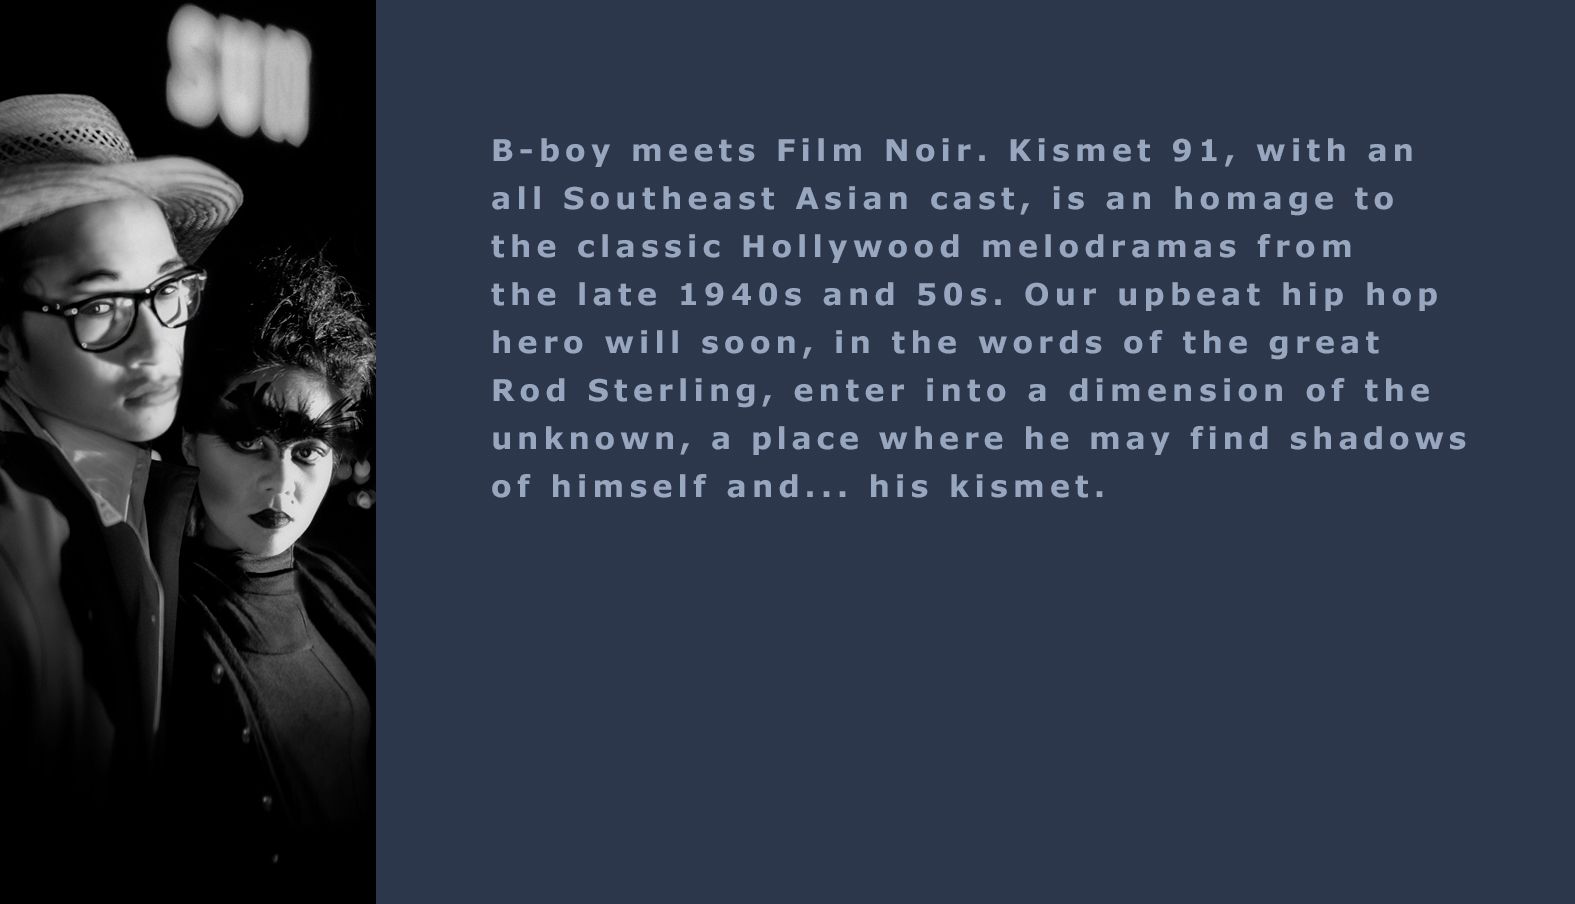 Kismet 91 Film